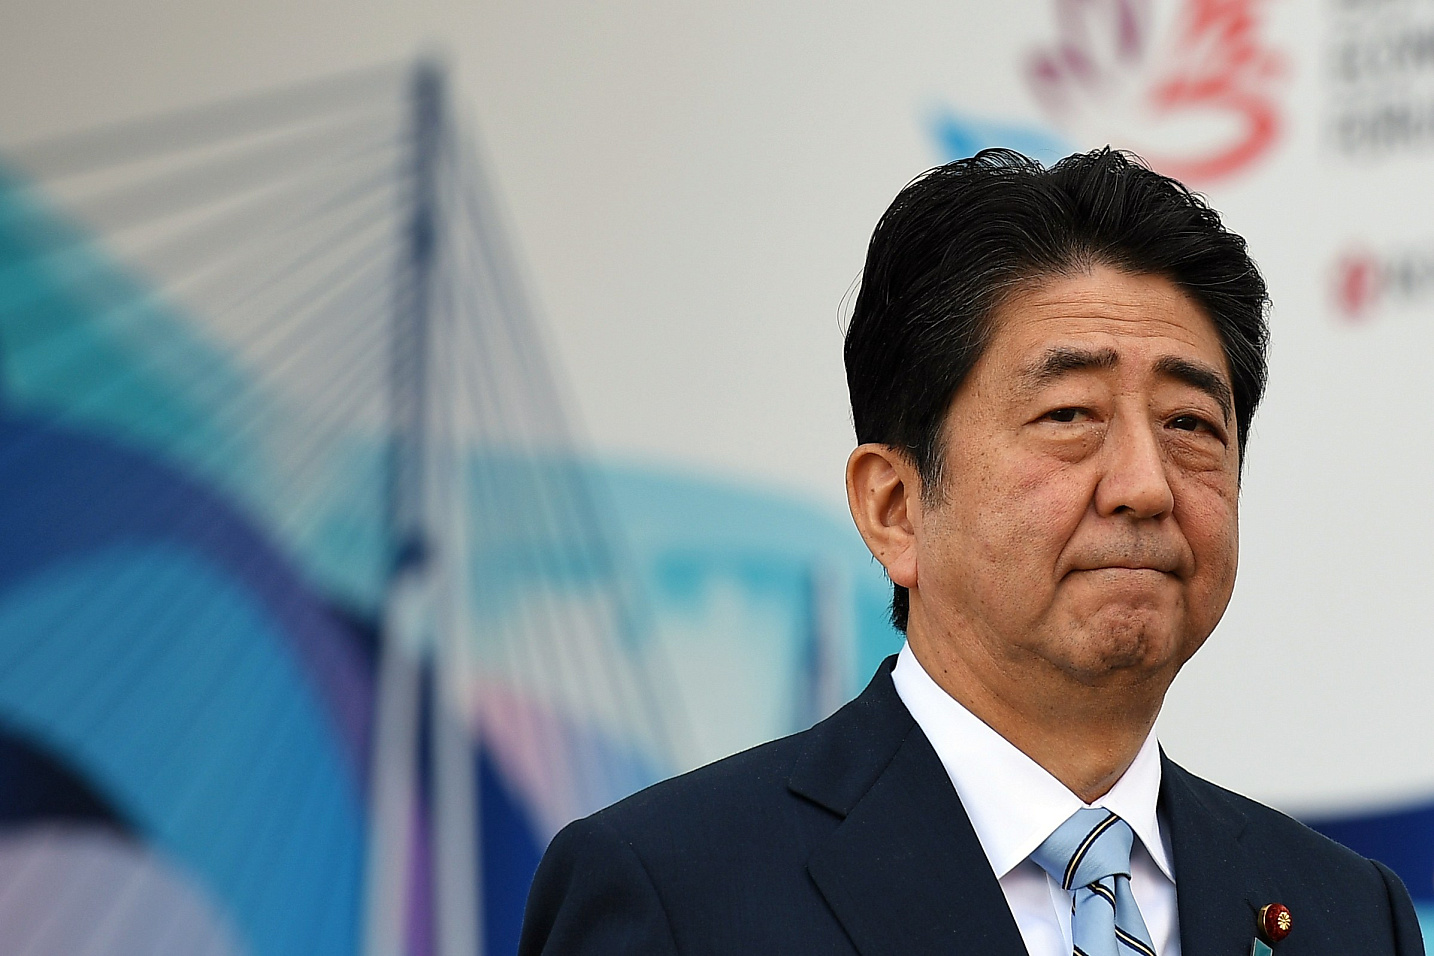 Премьер-министр Синдзо Абэ возглавит делегацию Японии на ВЭФ-2017